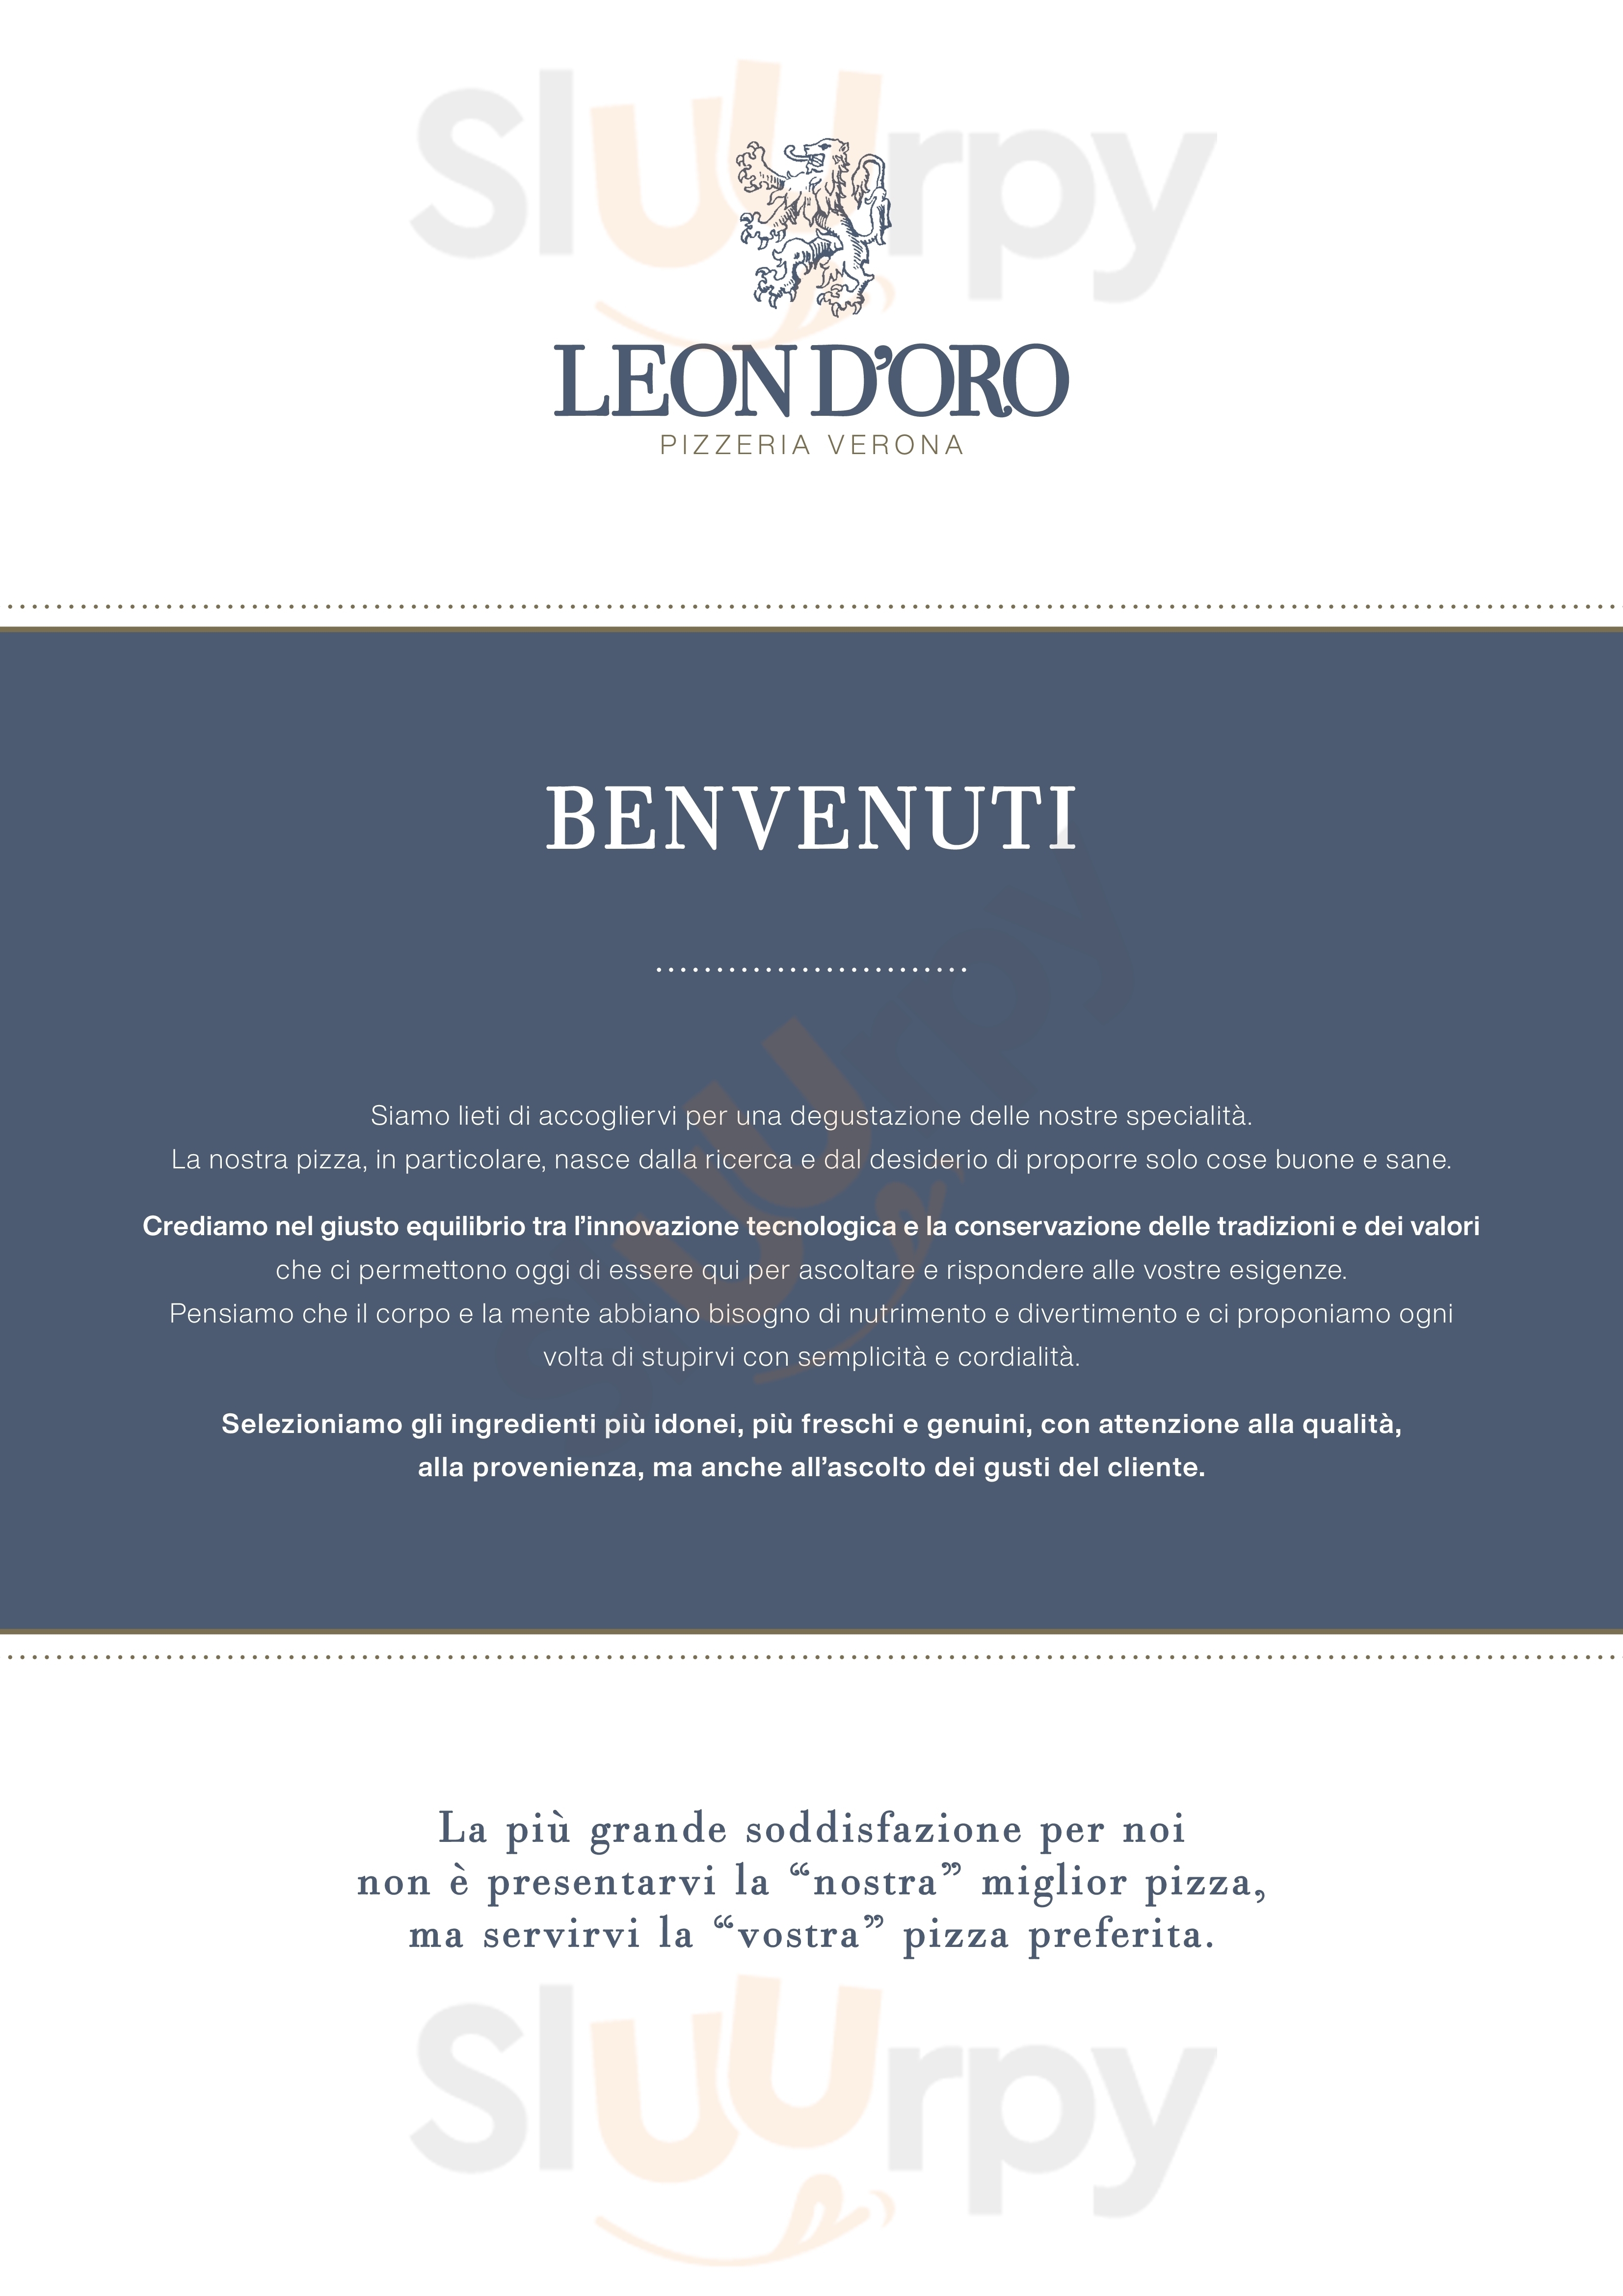 Pizzeria Leon d'Oro Verona menù 1 pagina